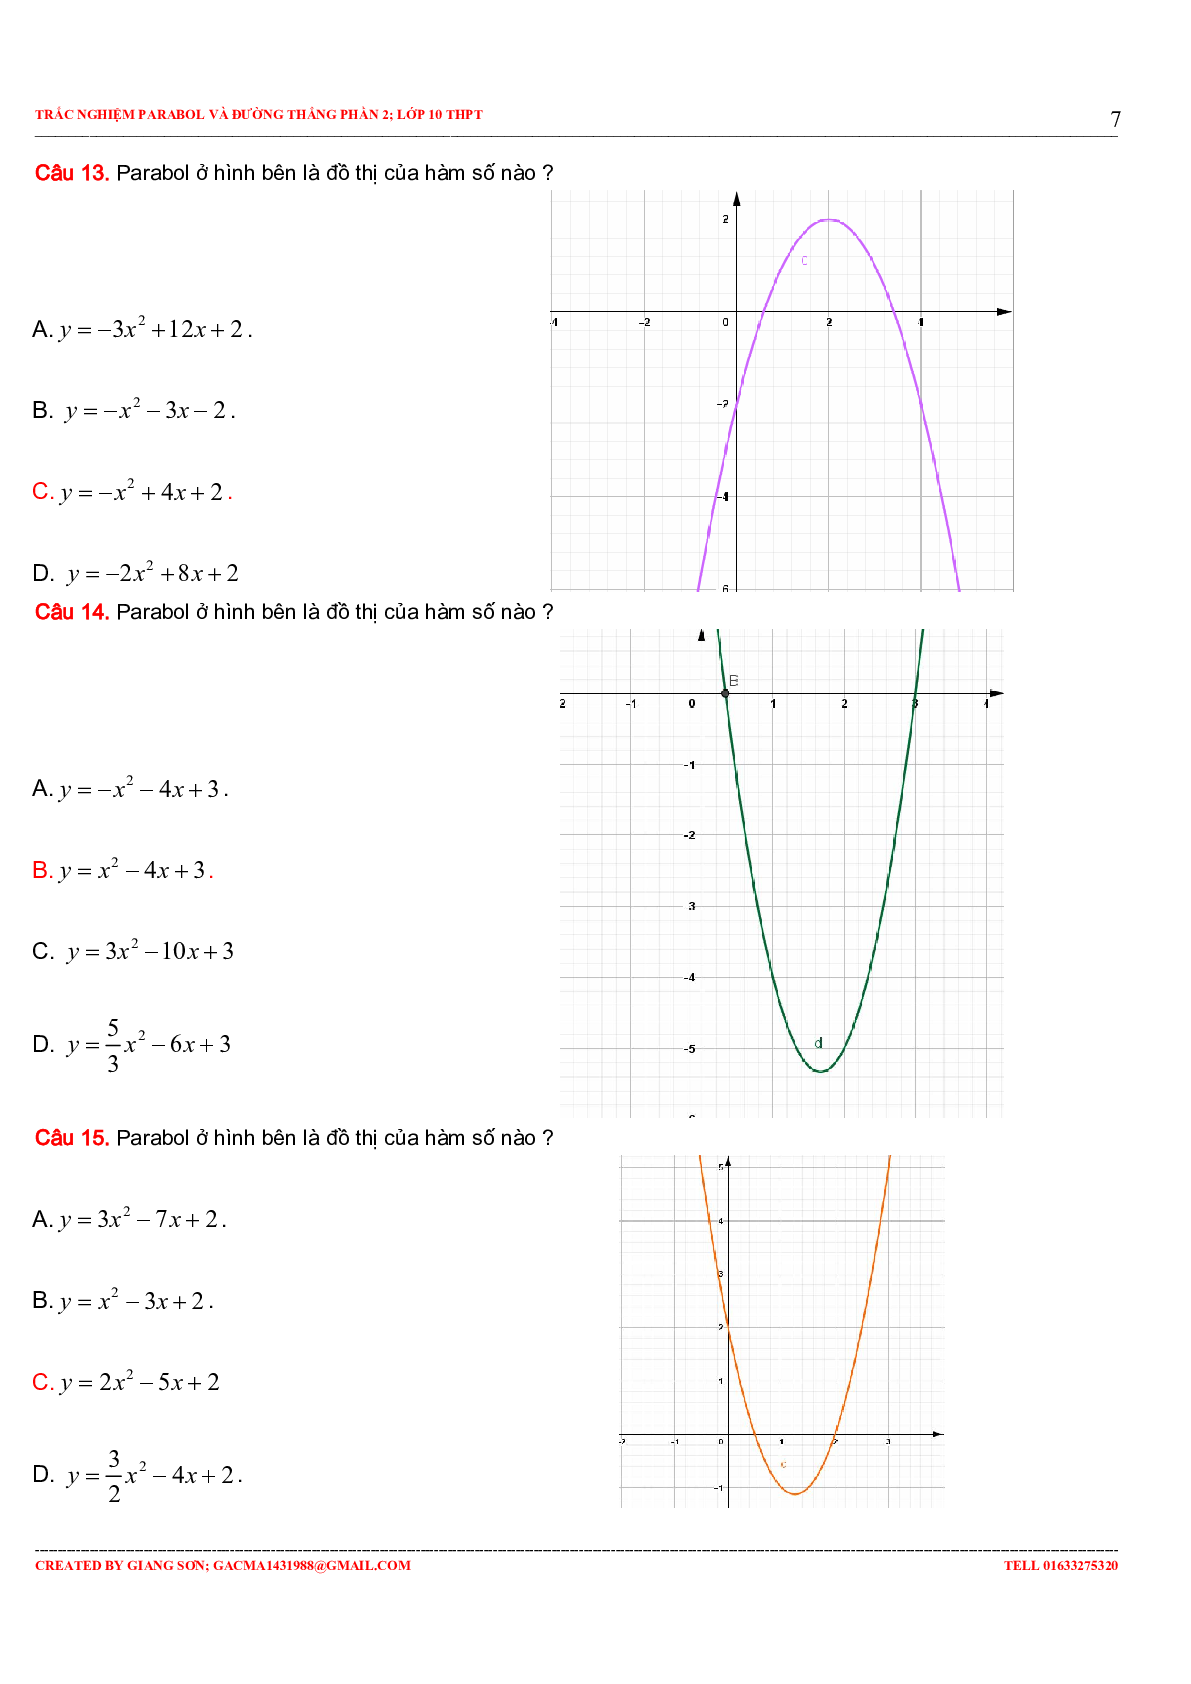 97 Bài tập trắc nghiệm Parabol và đường thẳng phần 2 (trang 7)